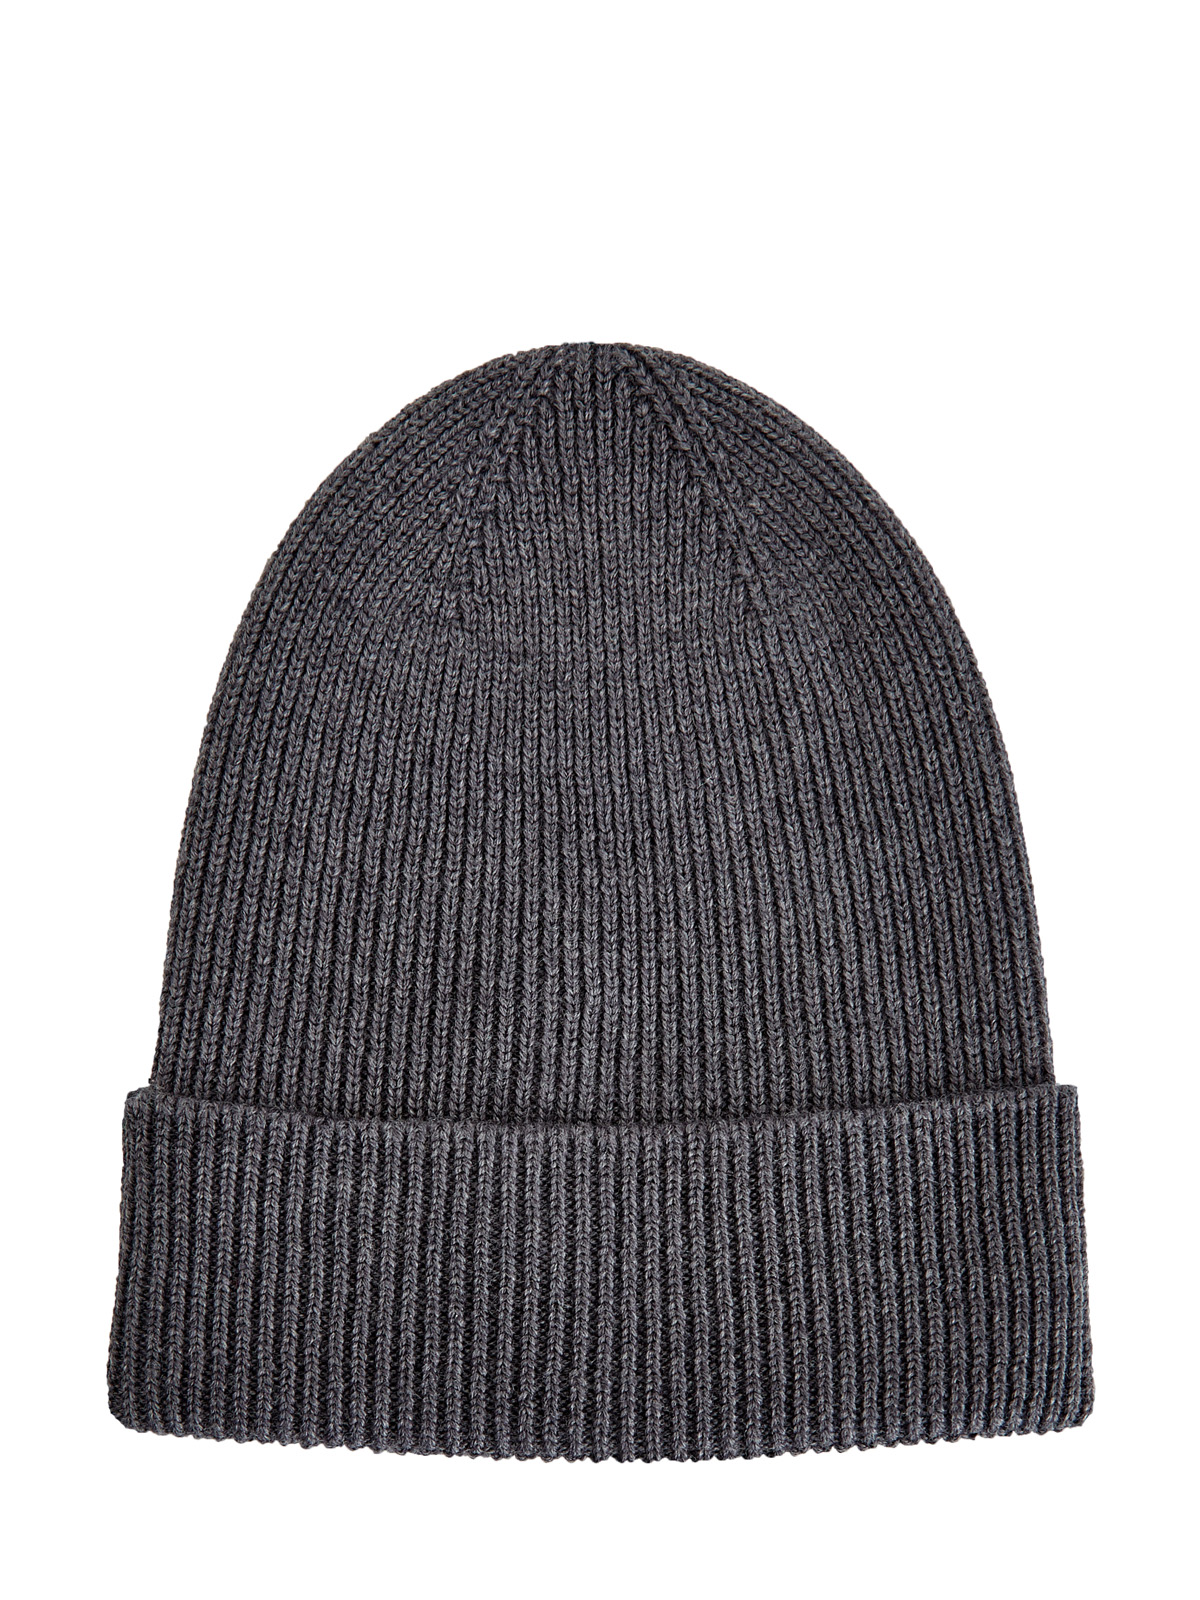 Базовая шапка из шерстяной пряжи с логотипом бренда MONCLER, цвет серый, размер 48;50 - фото 2